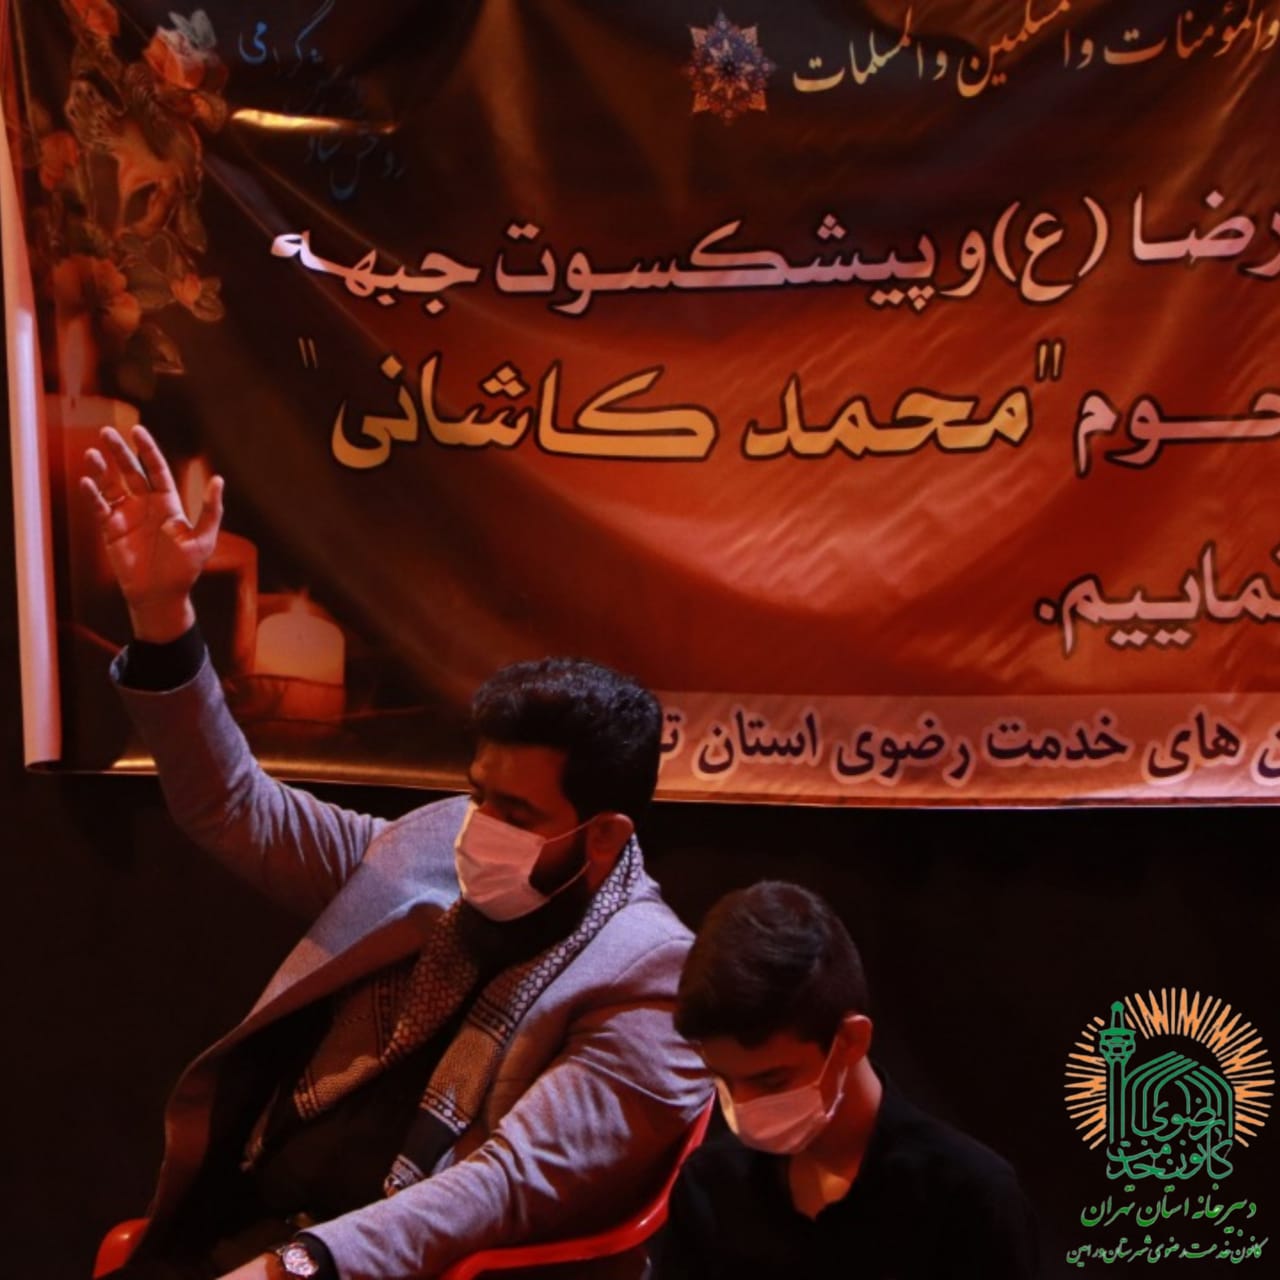 محفل روضه و انس با شهدا به یاد مرحوم حاج محمد کاشانی در ورامین برگزار شد 